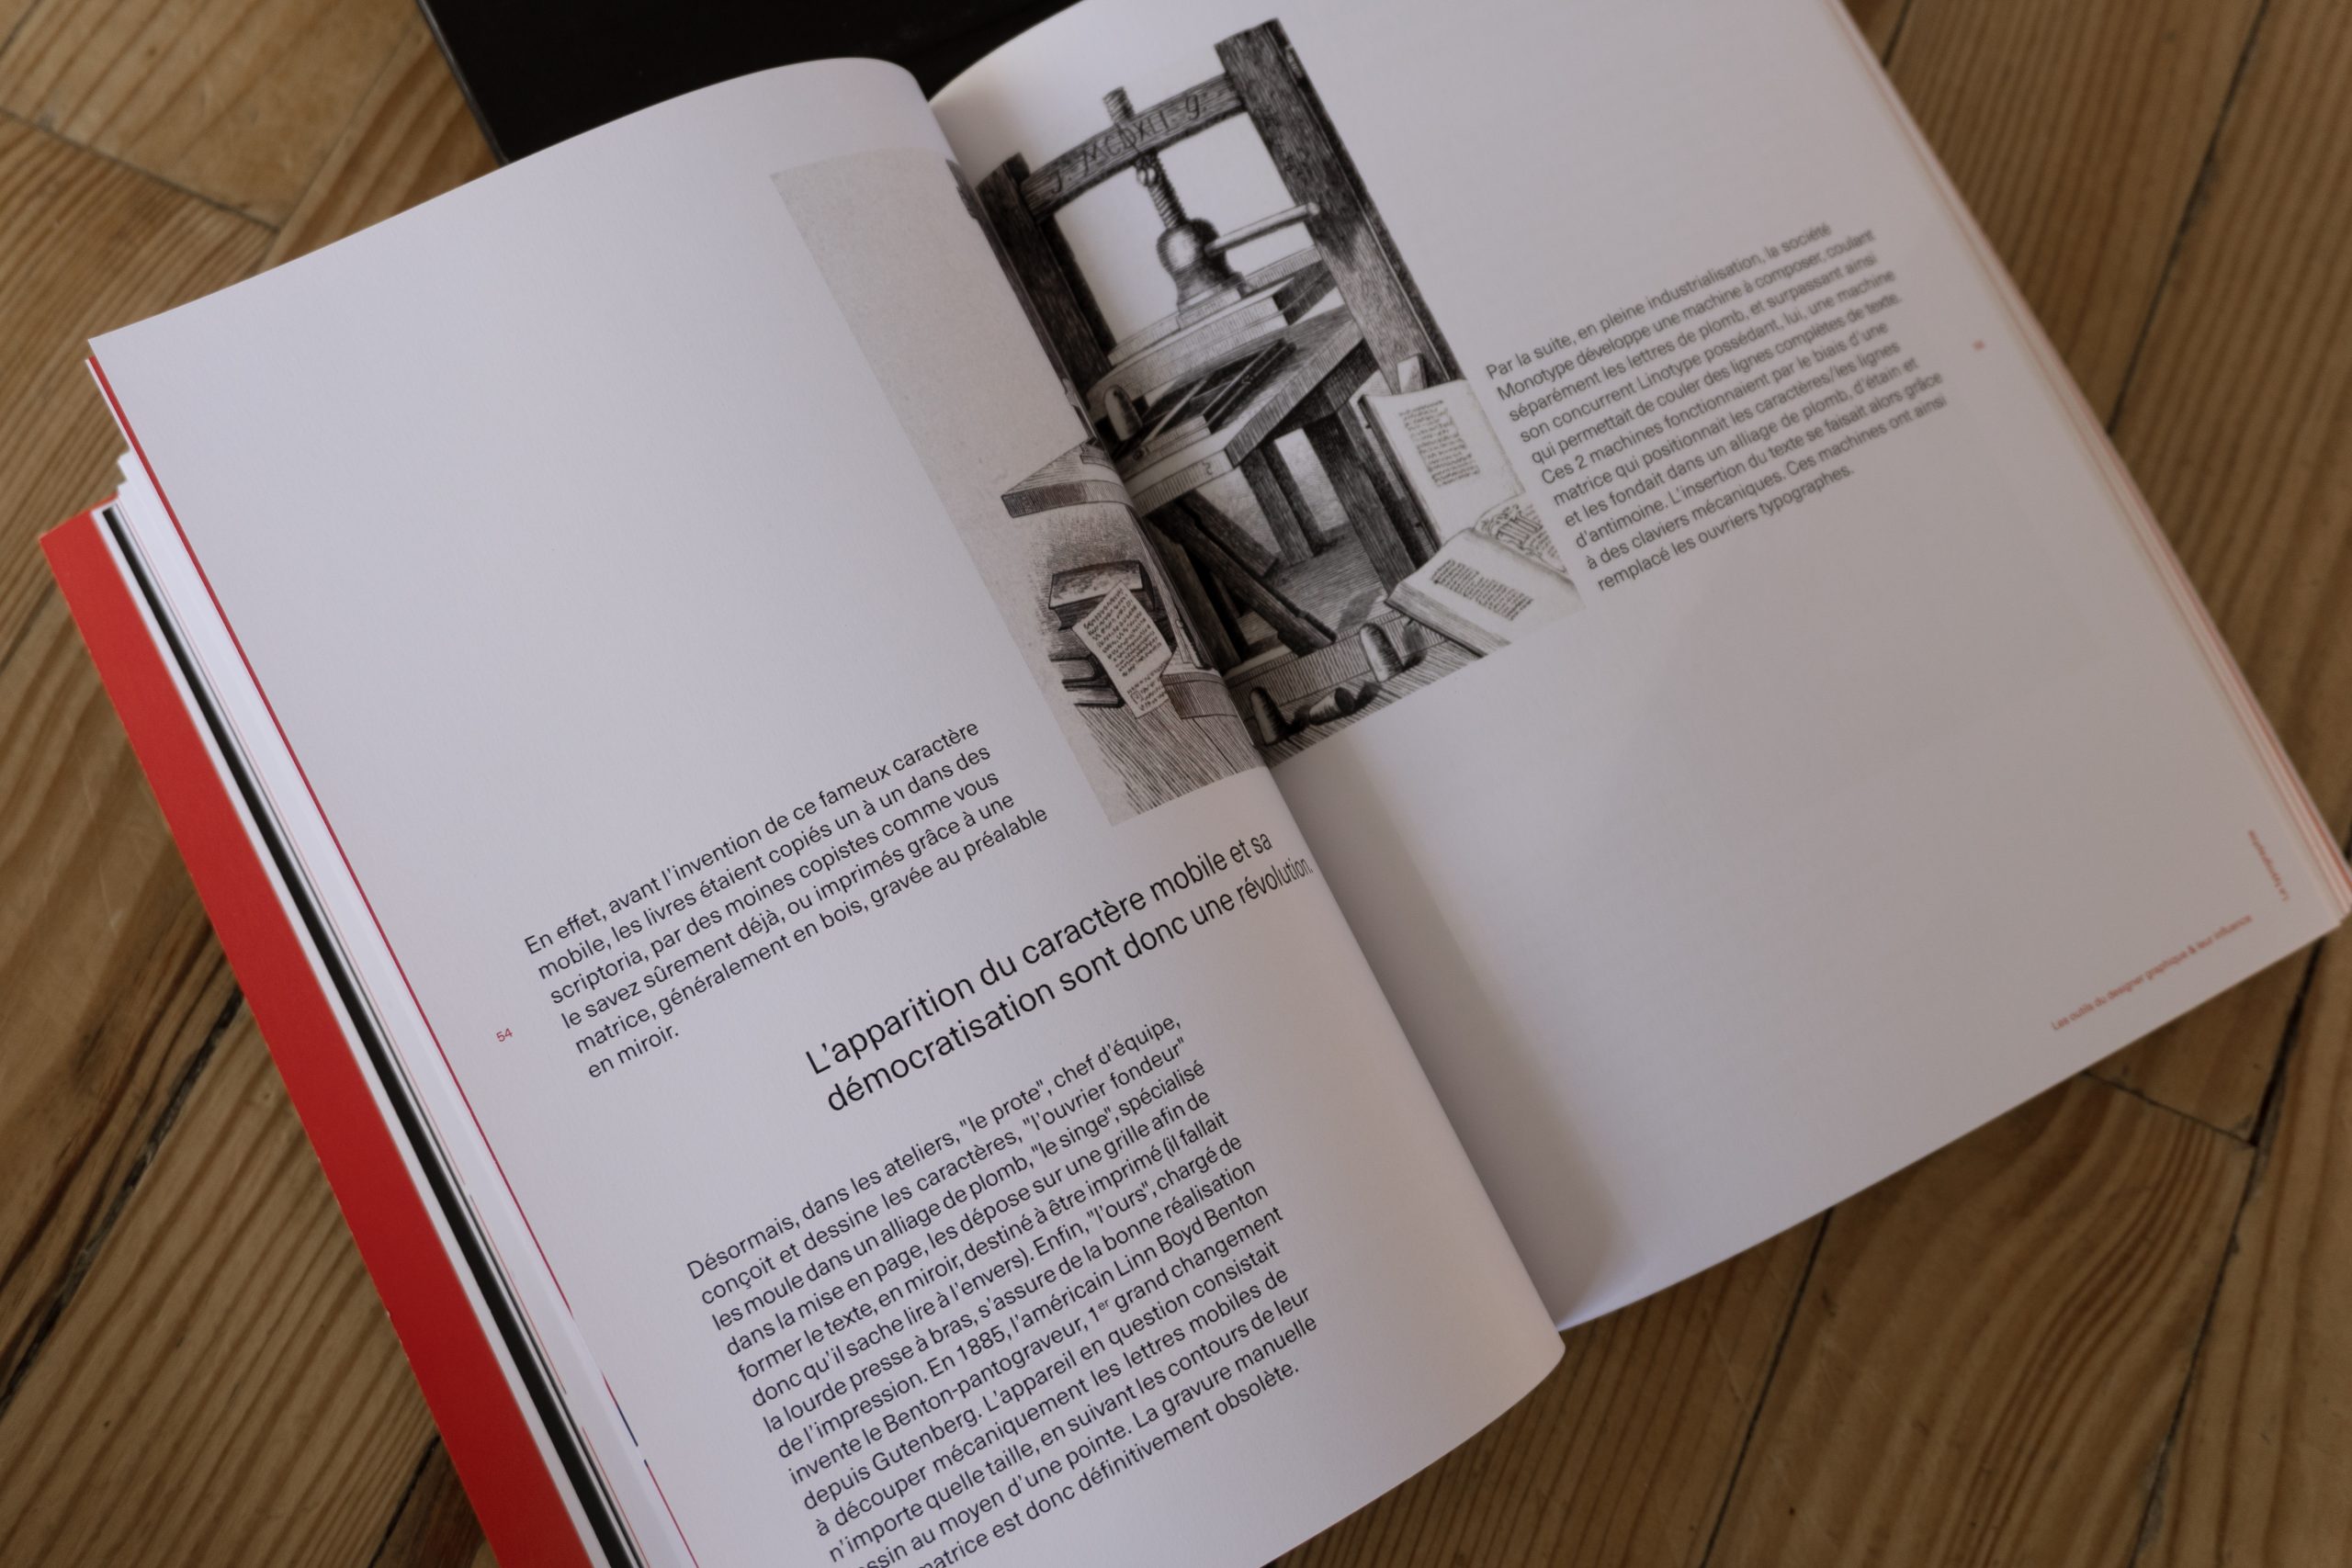 Visuel de l'intérieur du livre montrant une autre double page du chapitre sur la typographie.